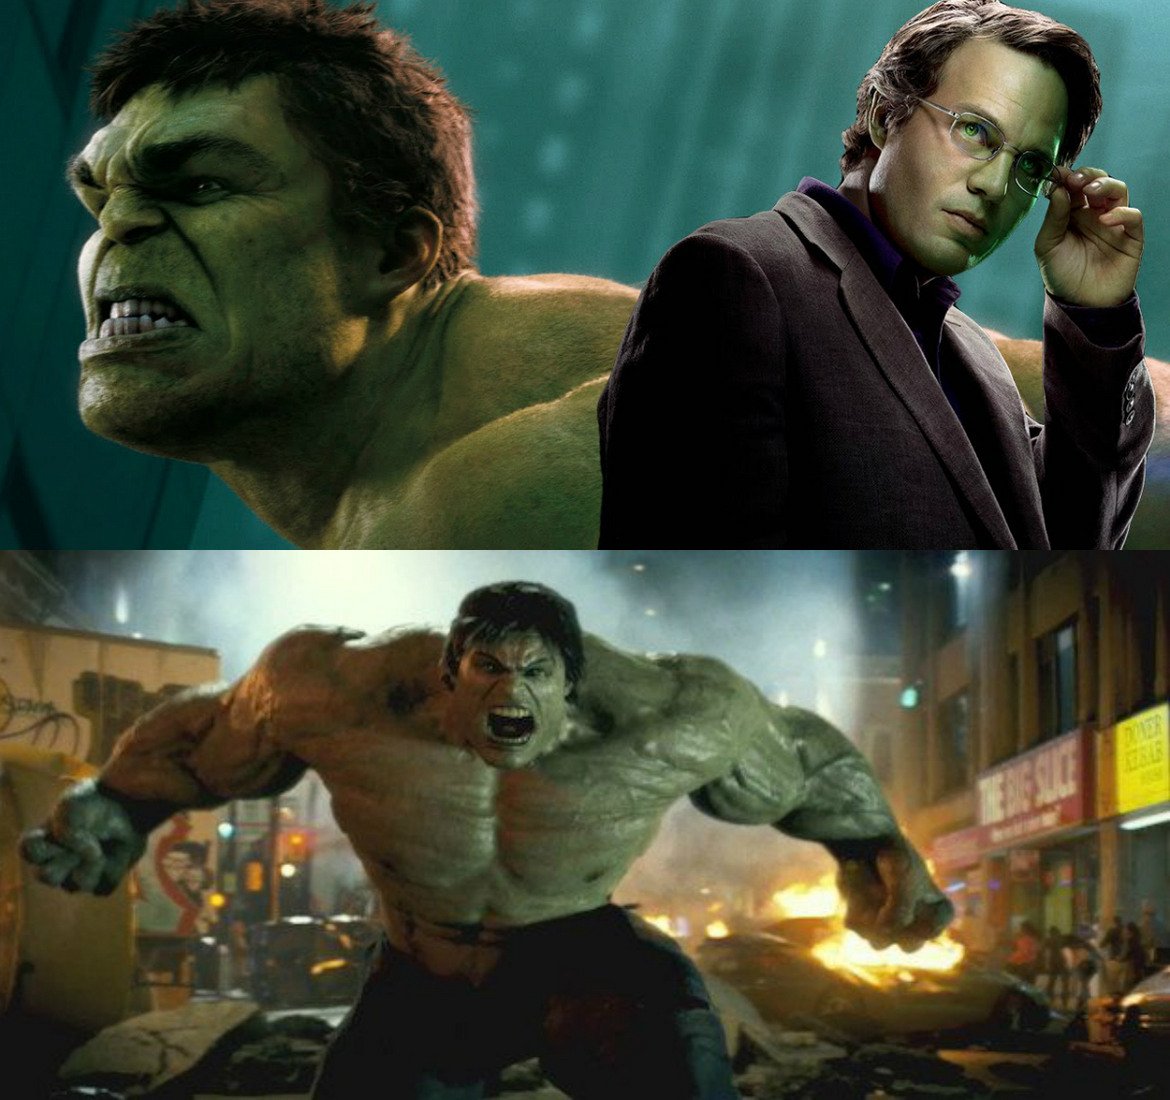 За мнозина Хълк на Едуард Нортън е много по-интересен и близък до оригиналната концепция от всички съвременни екранизации на героя (включително по-ранния опит с Ерик Бана). Като цяло обаче The Incredible Hulk от 2008 г. не беше най-запомнящото се парче от филмовата вселена на Marvel. Доста фенове се зарадваха да видят Марк Ръфало като Хълк заради запомнящите се моменти с негово участие в The Avengers (2012).